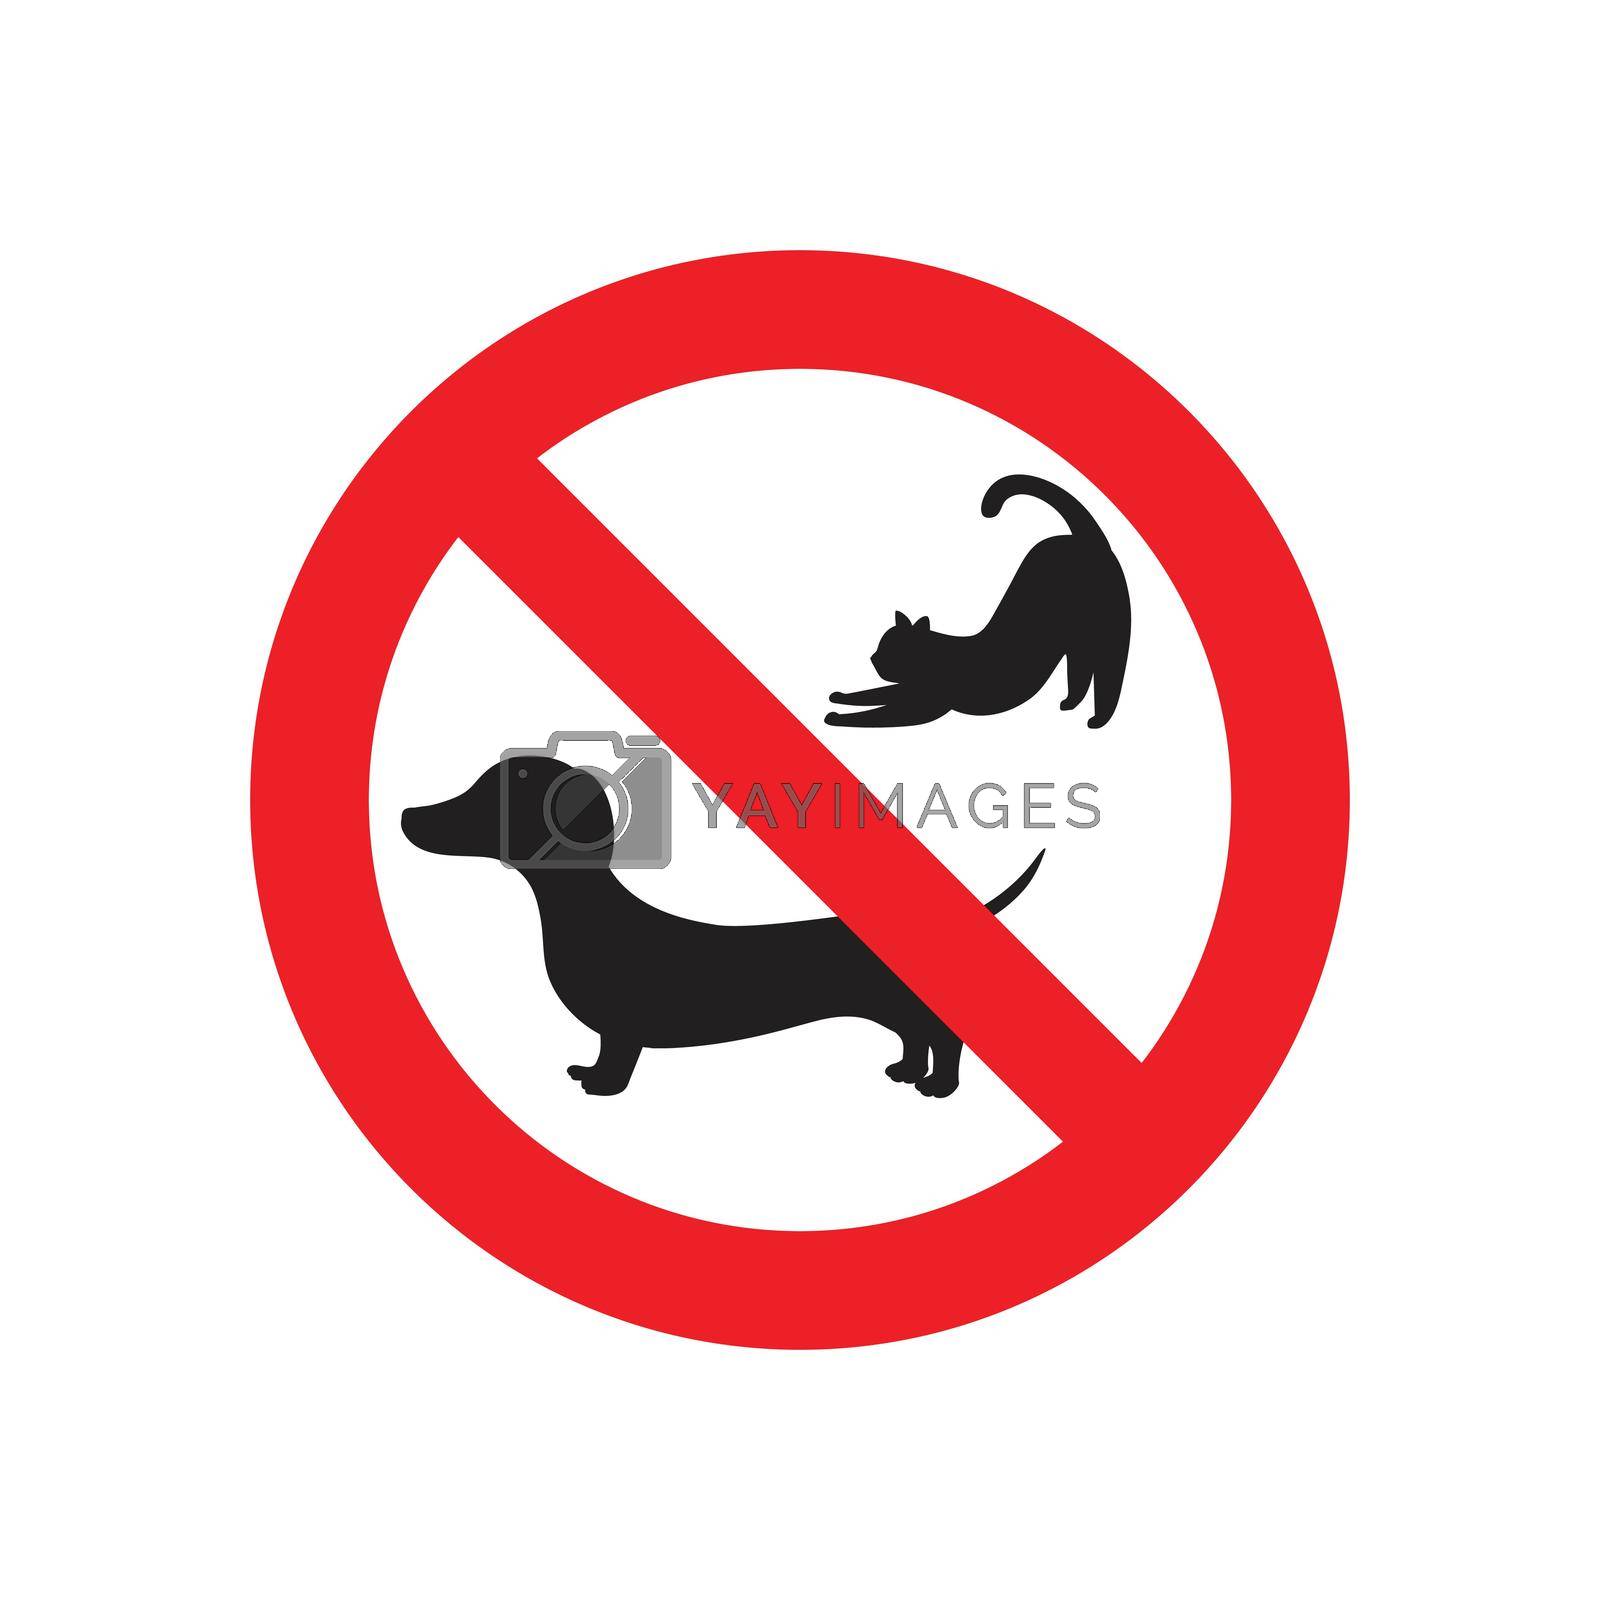 Royalty free image of No pets sign by siraanamwong